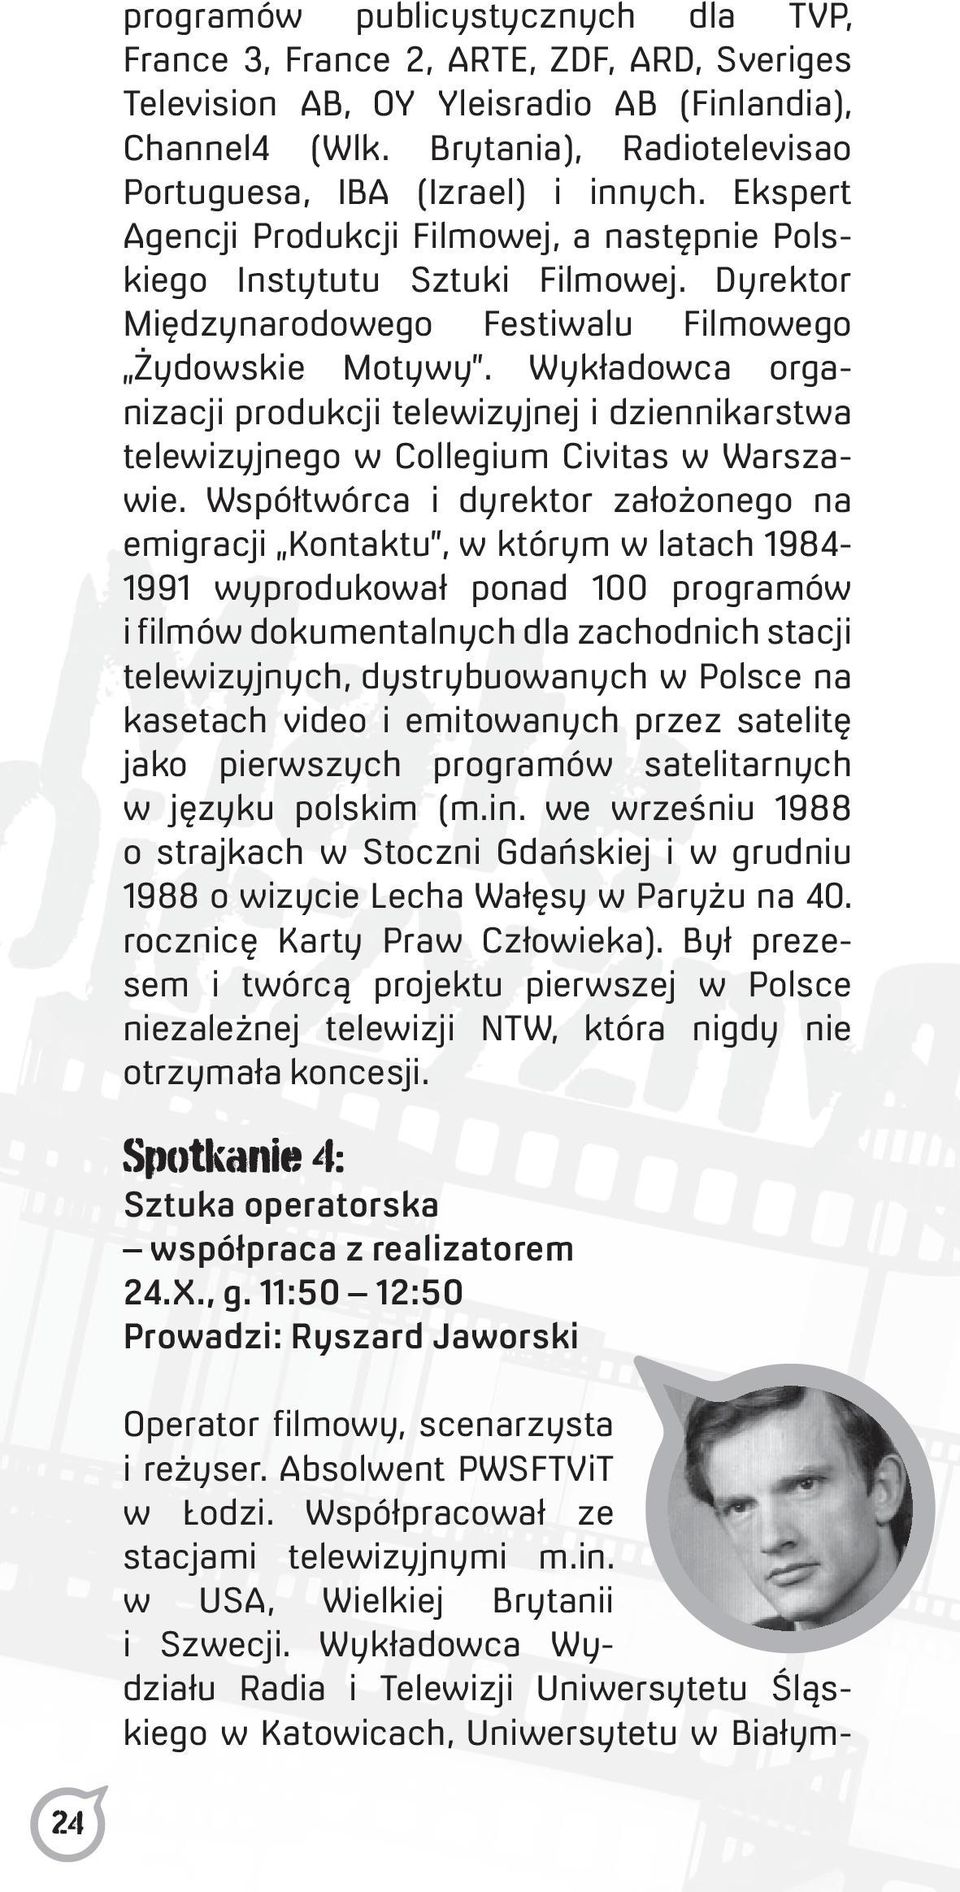 Dyrektor Międzynarodowego Festiwalu Filmowego Żydowskie Motywy. Wykładowca organizacji produkcji telewizyjnej i dziennikarstwa telewizyjnego w Collegium Civitas w Warszawie.